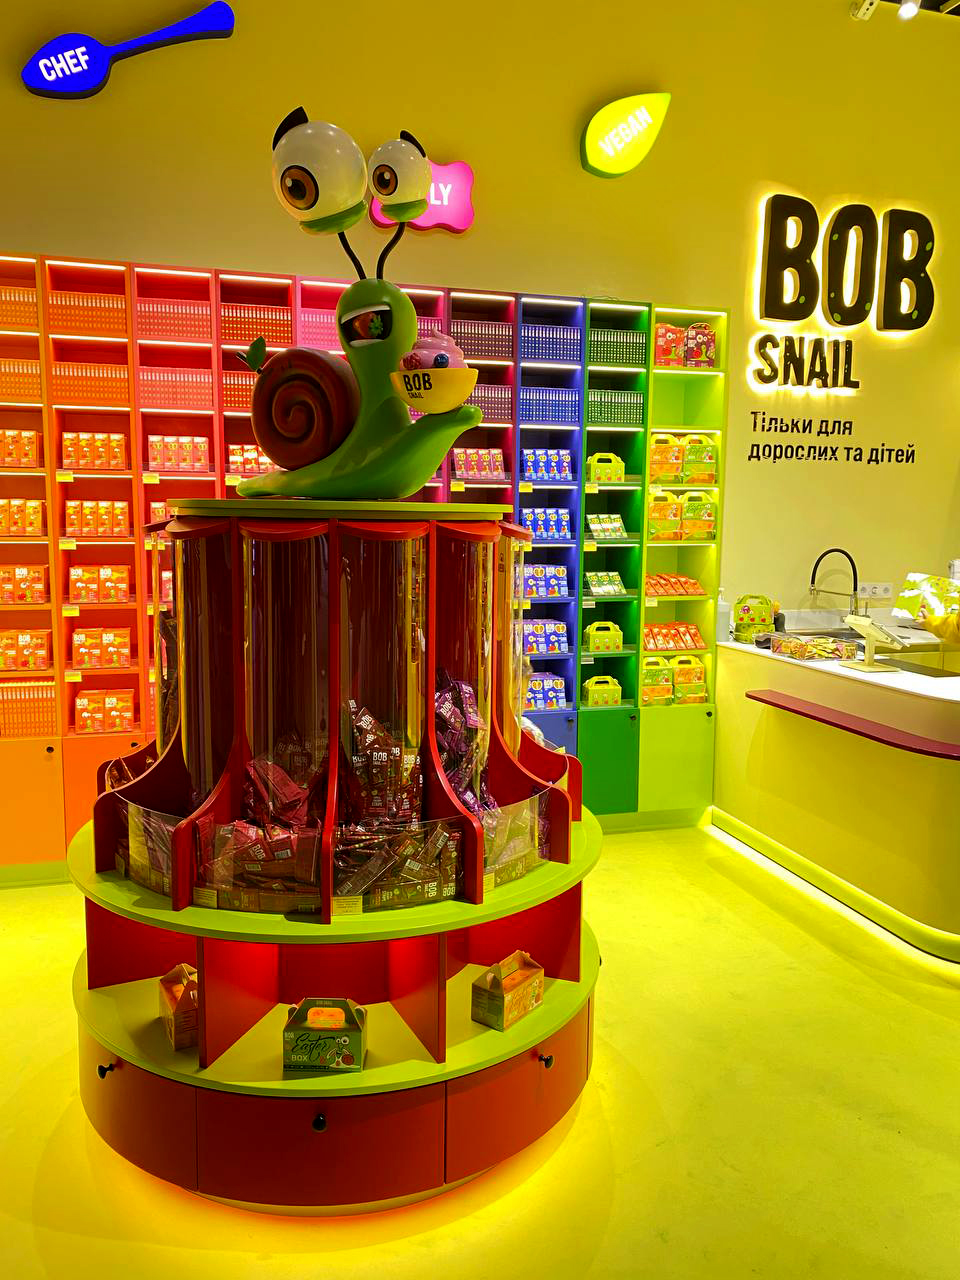 Bob Snail - український бренд корисних солодощів